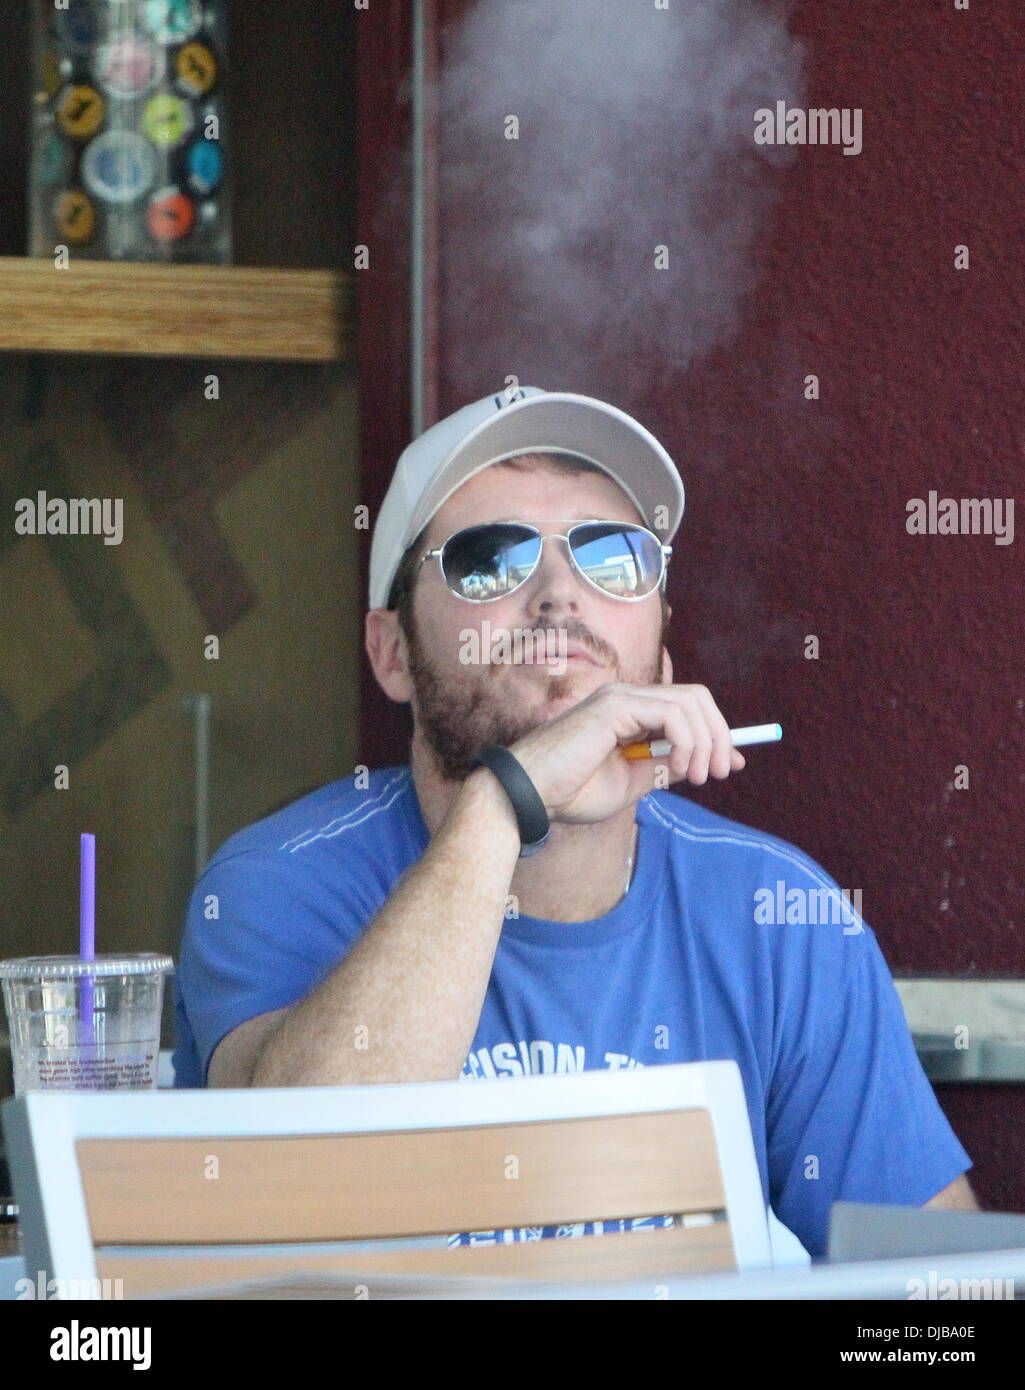 Kevin Connolly fumando un cigarrillo (o marihuana)
